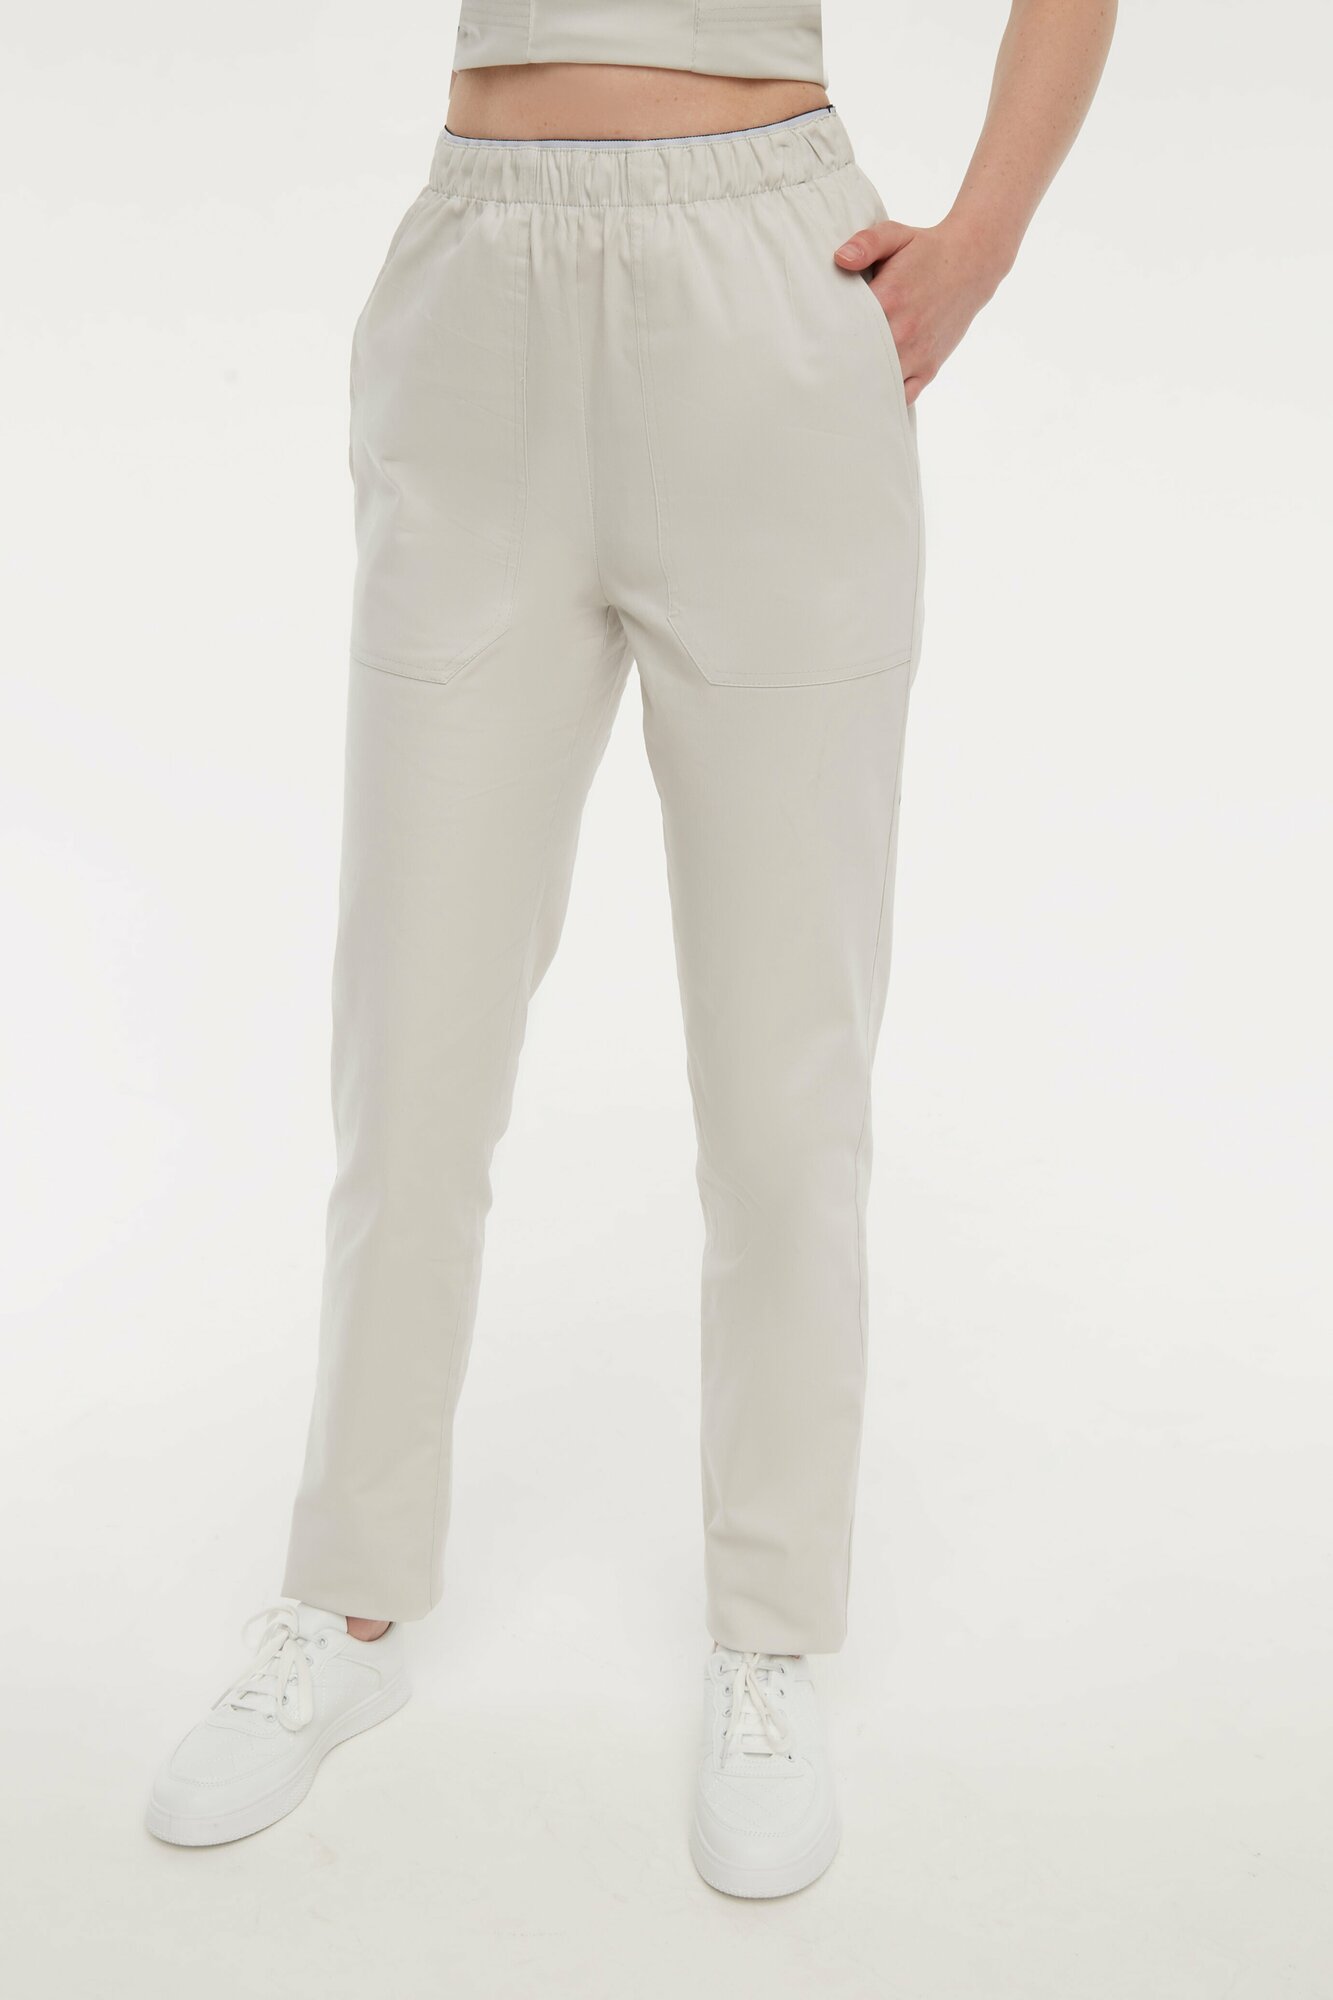 Медицинский костюм MEDIAL Стрейч 02 Цвет белый, светло-серый, молочный. Размер 50 MEDFUL02JEAWHTWHT50